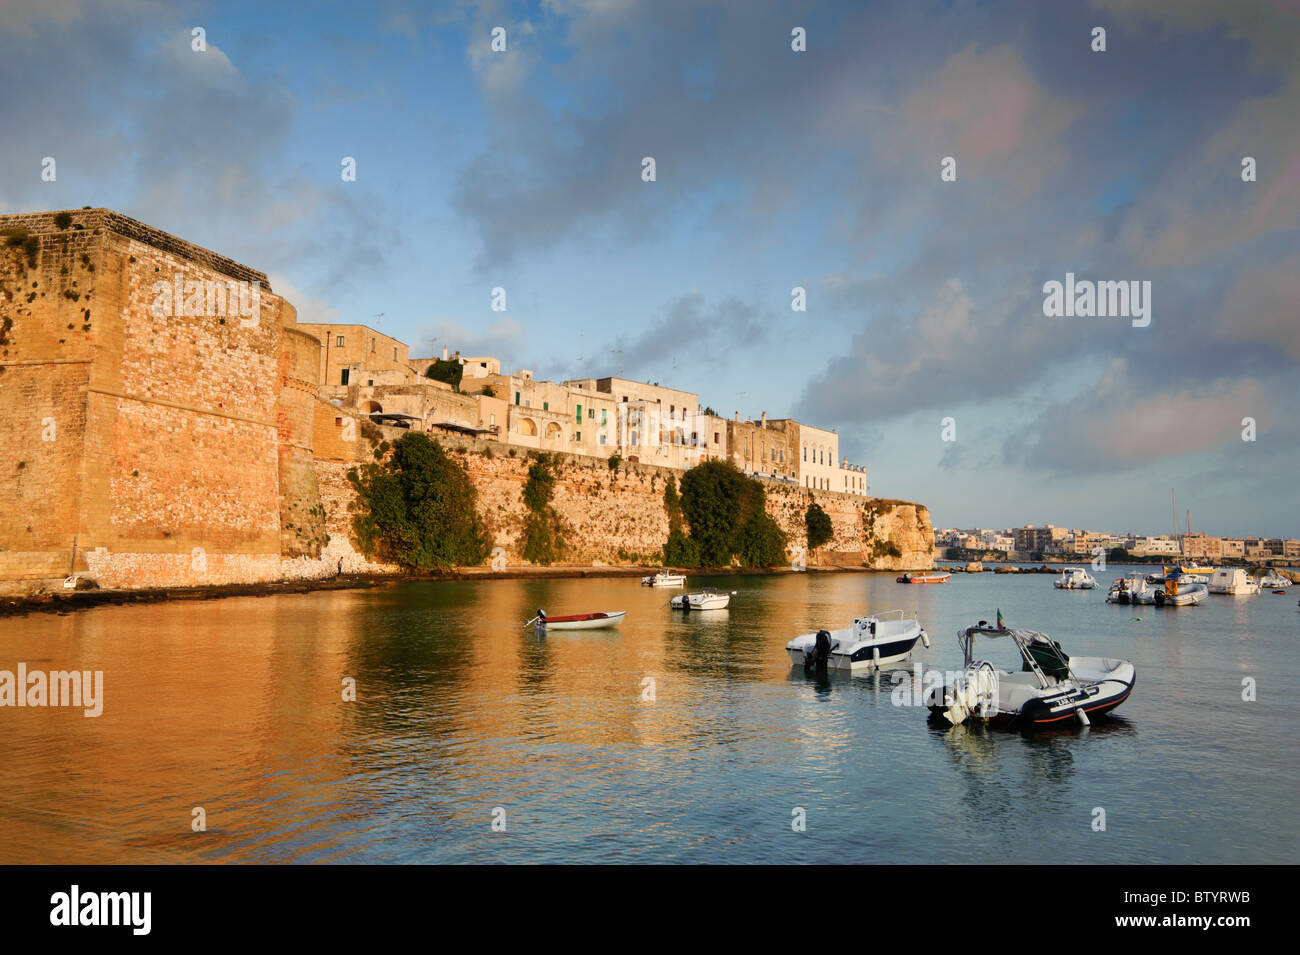 El puerto y fortificaciones de Otranto, Puglia, Italia Foto de stock